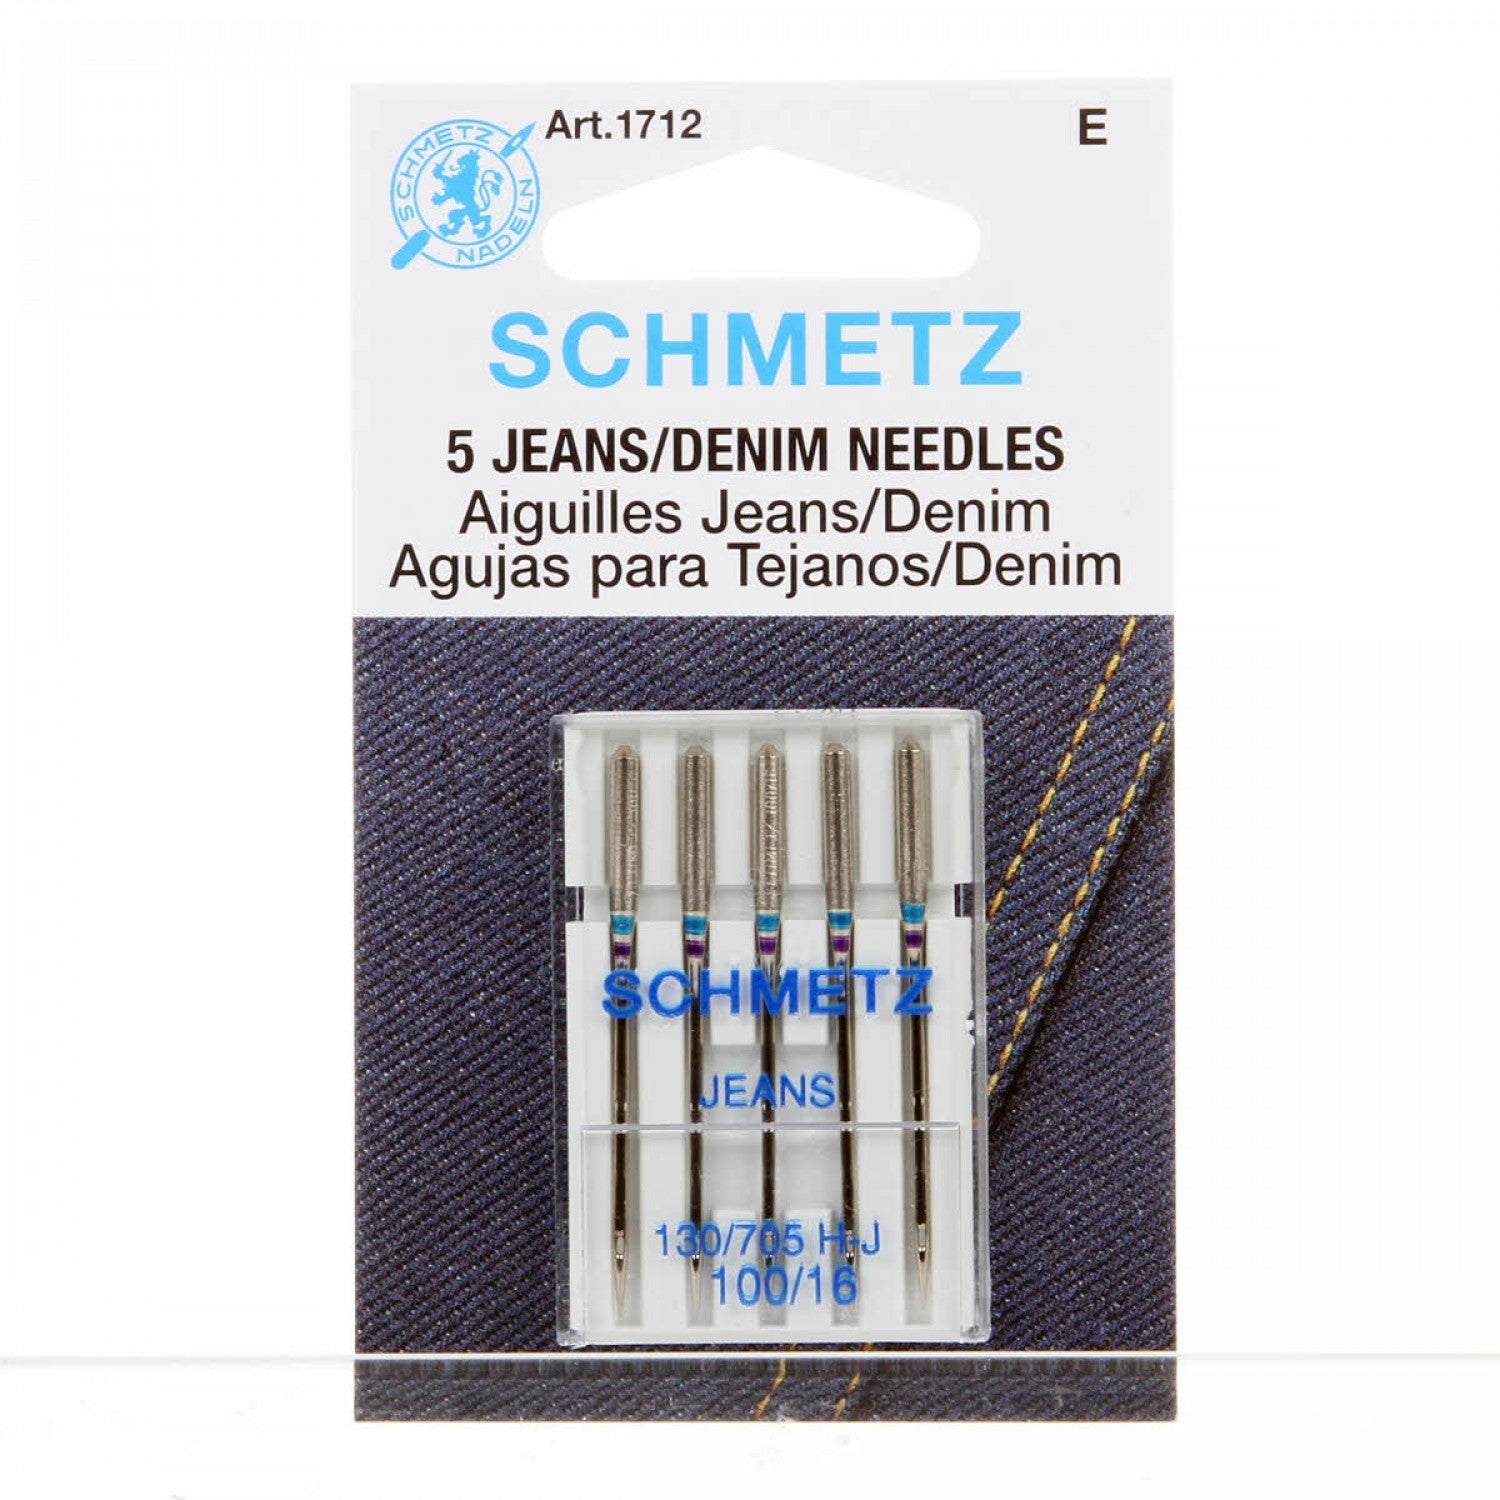 Schmetz Denim Needle - 100/16 - 1 Package of 5 Needles